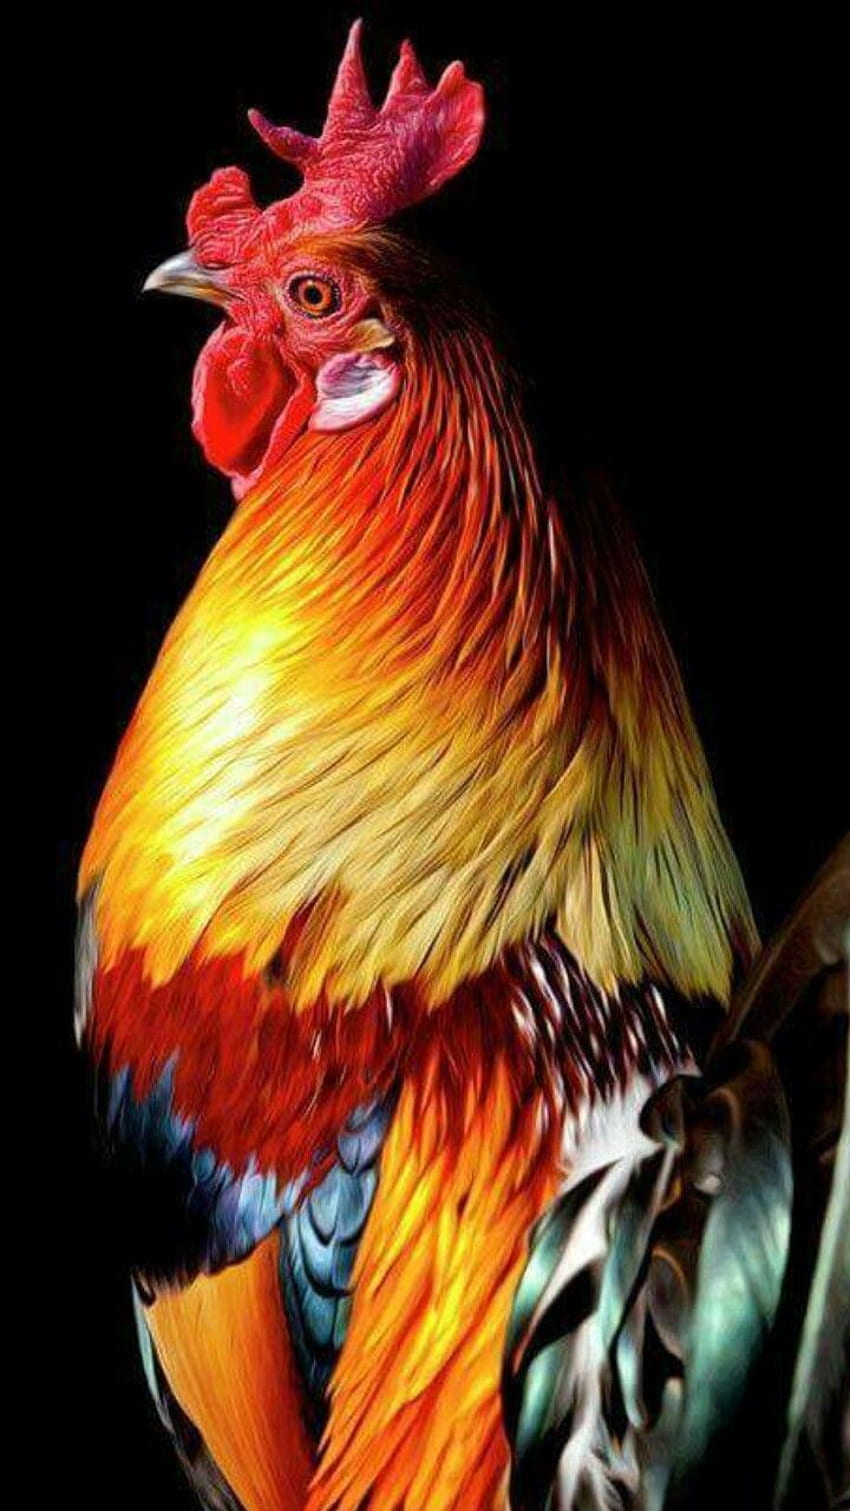 Bunter Hahn, Hahn, Hahn, Hahngraphik. Schöner Hahn. Ausgefallene Hühner, schöne Hühner, Hühner und Hähne, rotes Huhn HD-Handy-Hintergrundbild